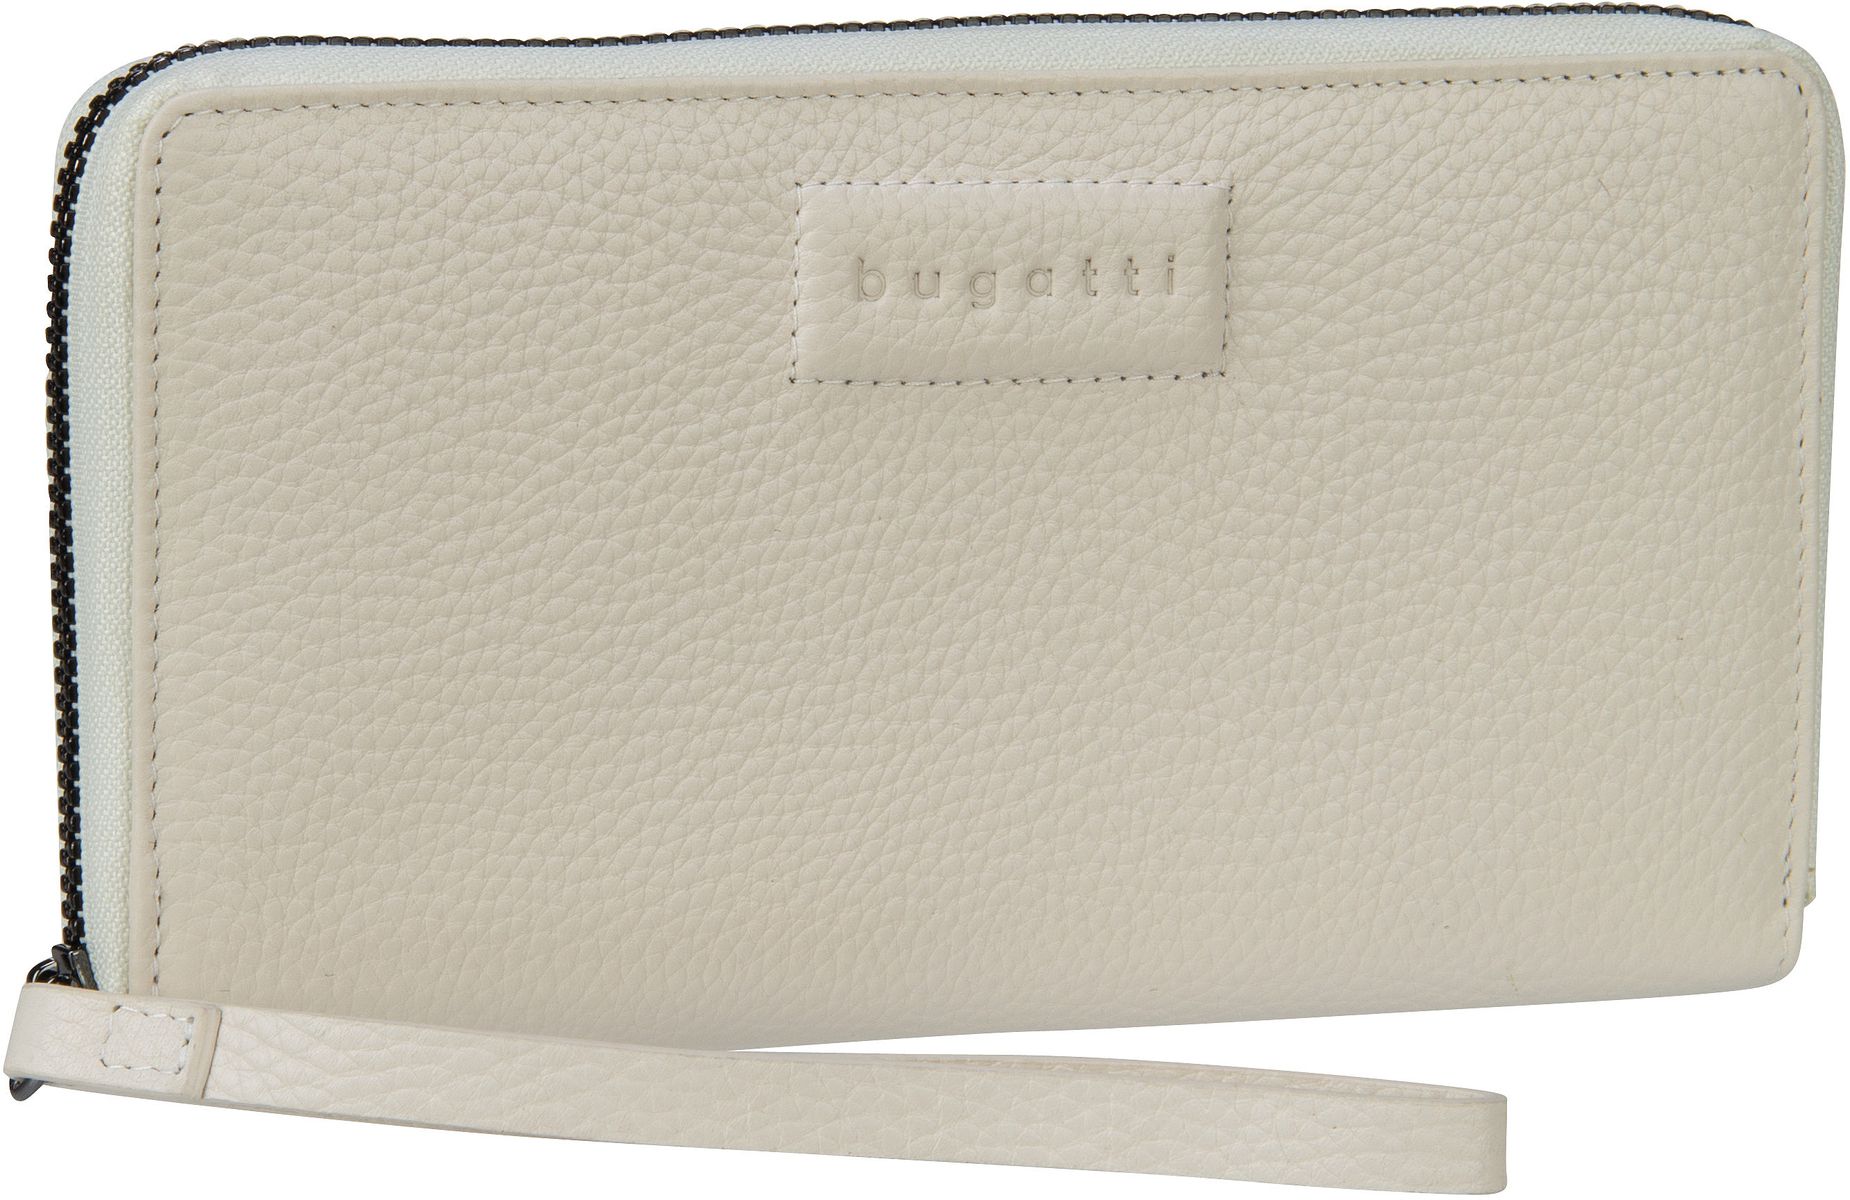 Bugatti Elsa Long Ladies Zip Wallet  in Weiß (0.5 Liter), Geldbörse